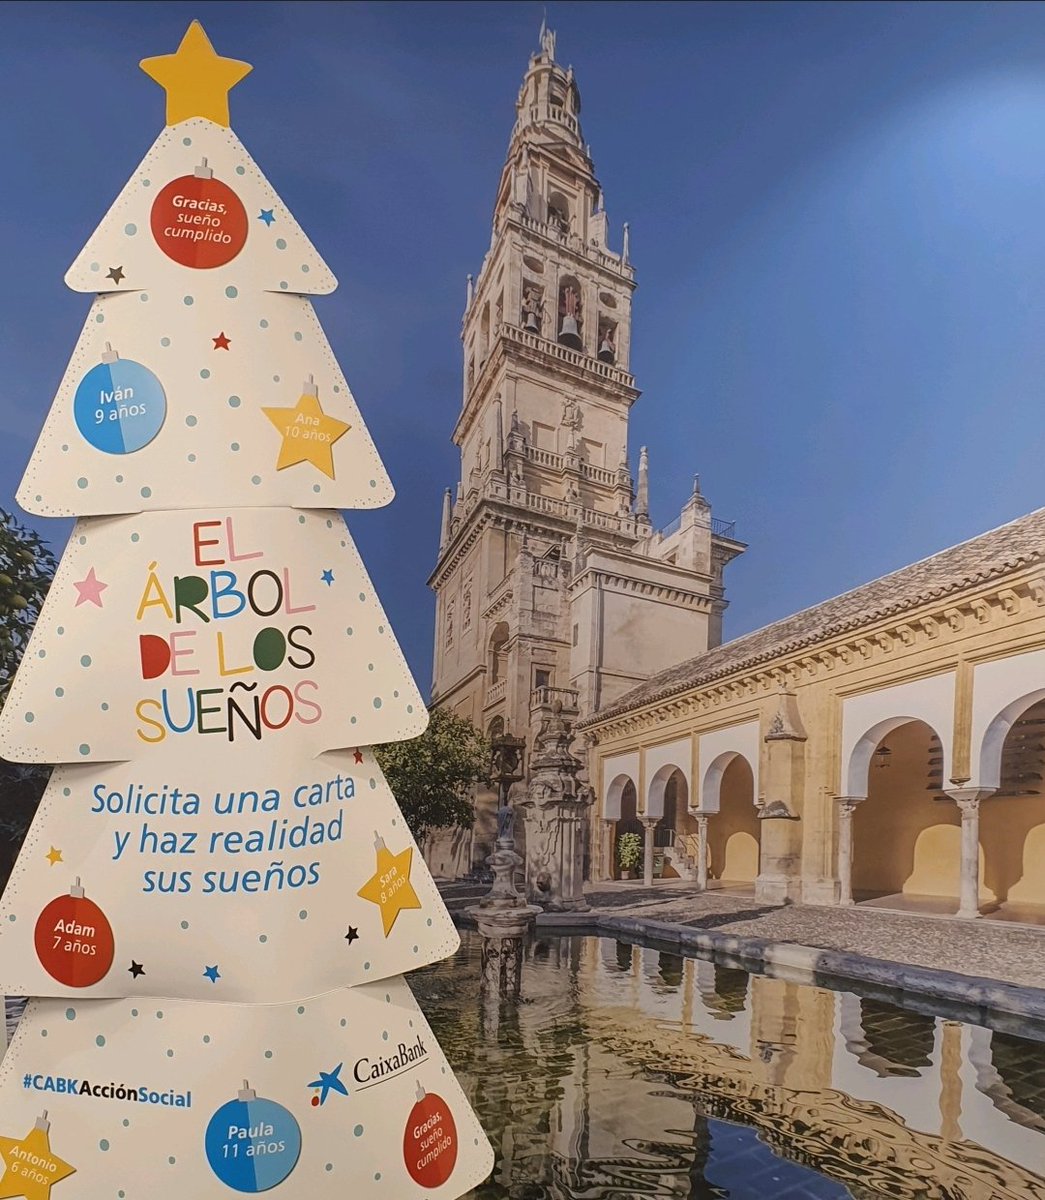 🎄La magia del #ÁrboldelosSueños llena esta Navidad cada rincón de #Andalucía para cumplir los deseos de cerca de 6.000 niños en situación de vulnerabilidad.¿Nos ayudas desde #Cordoba?
💌 Recoge tu carta en @caixabank.
 🎁 Consigue su regalo.
✨ Cumple su sueño.
#CABKAcciónSocial